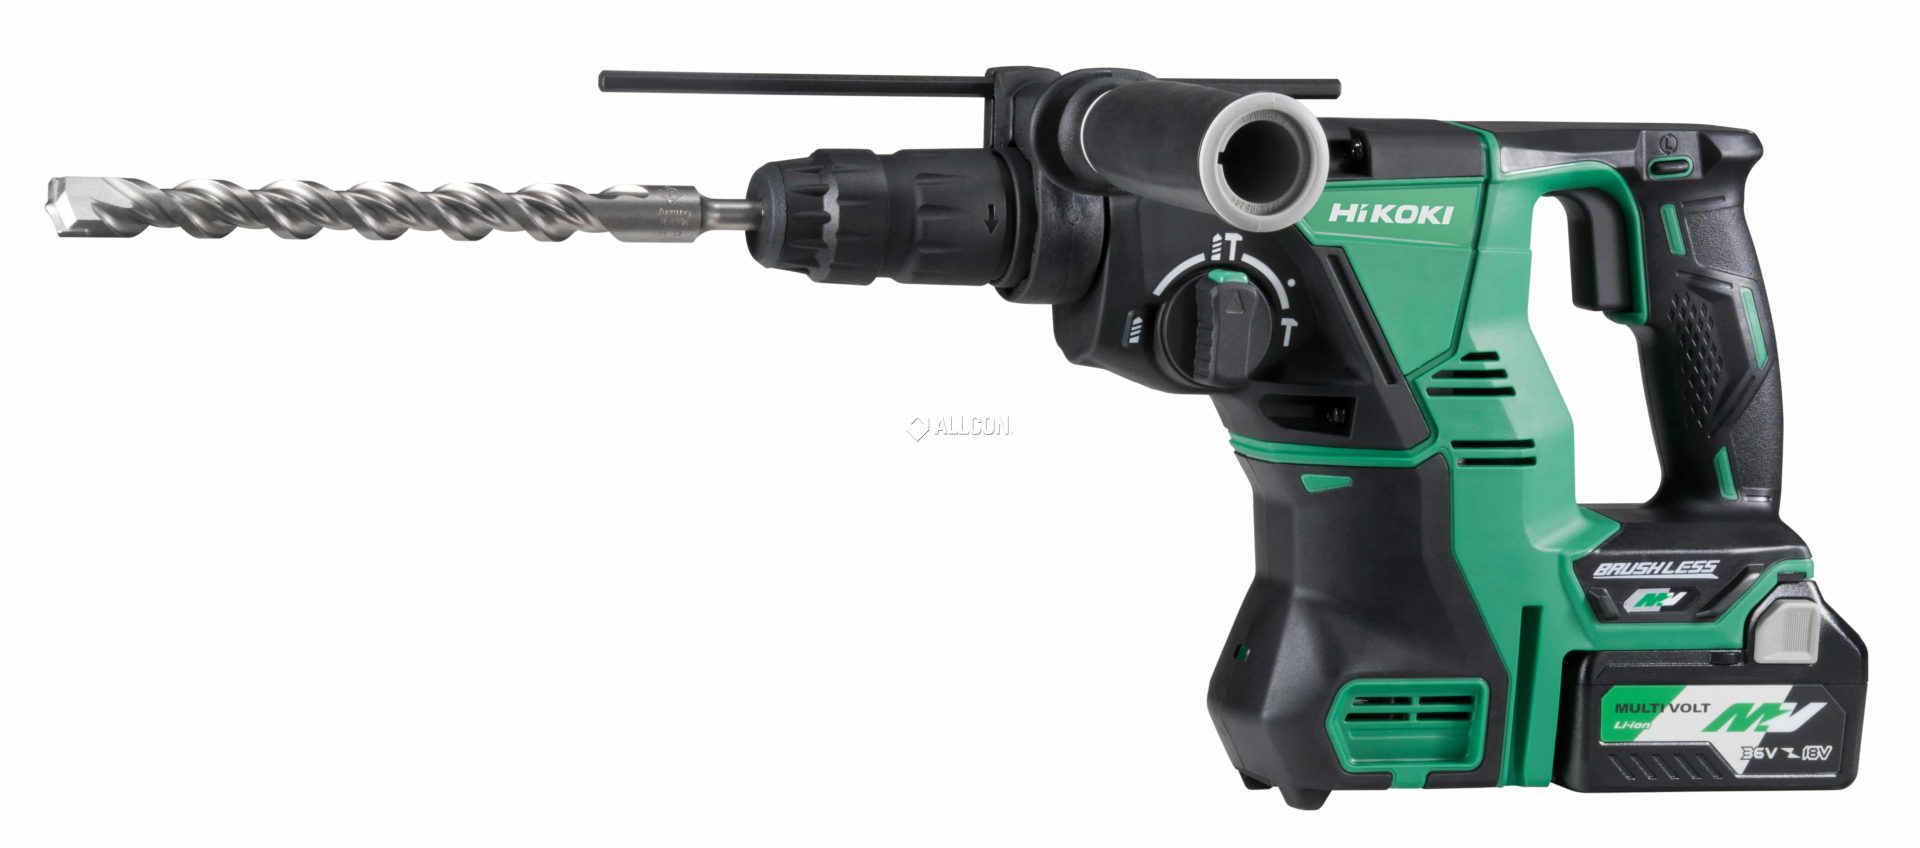 Hikoki 36V Brushless SDS Plus Rotary Hammer Drill – Skin Only